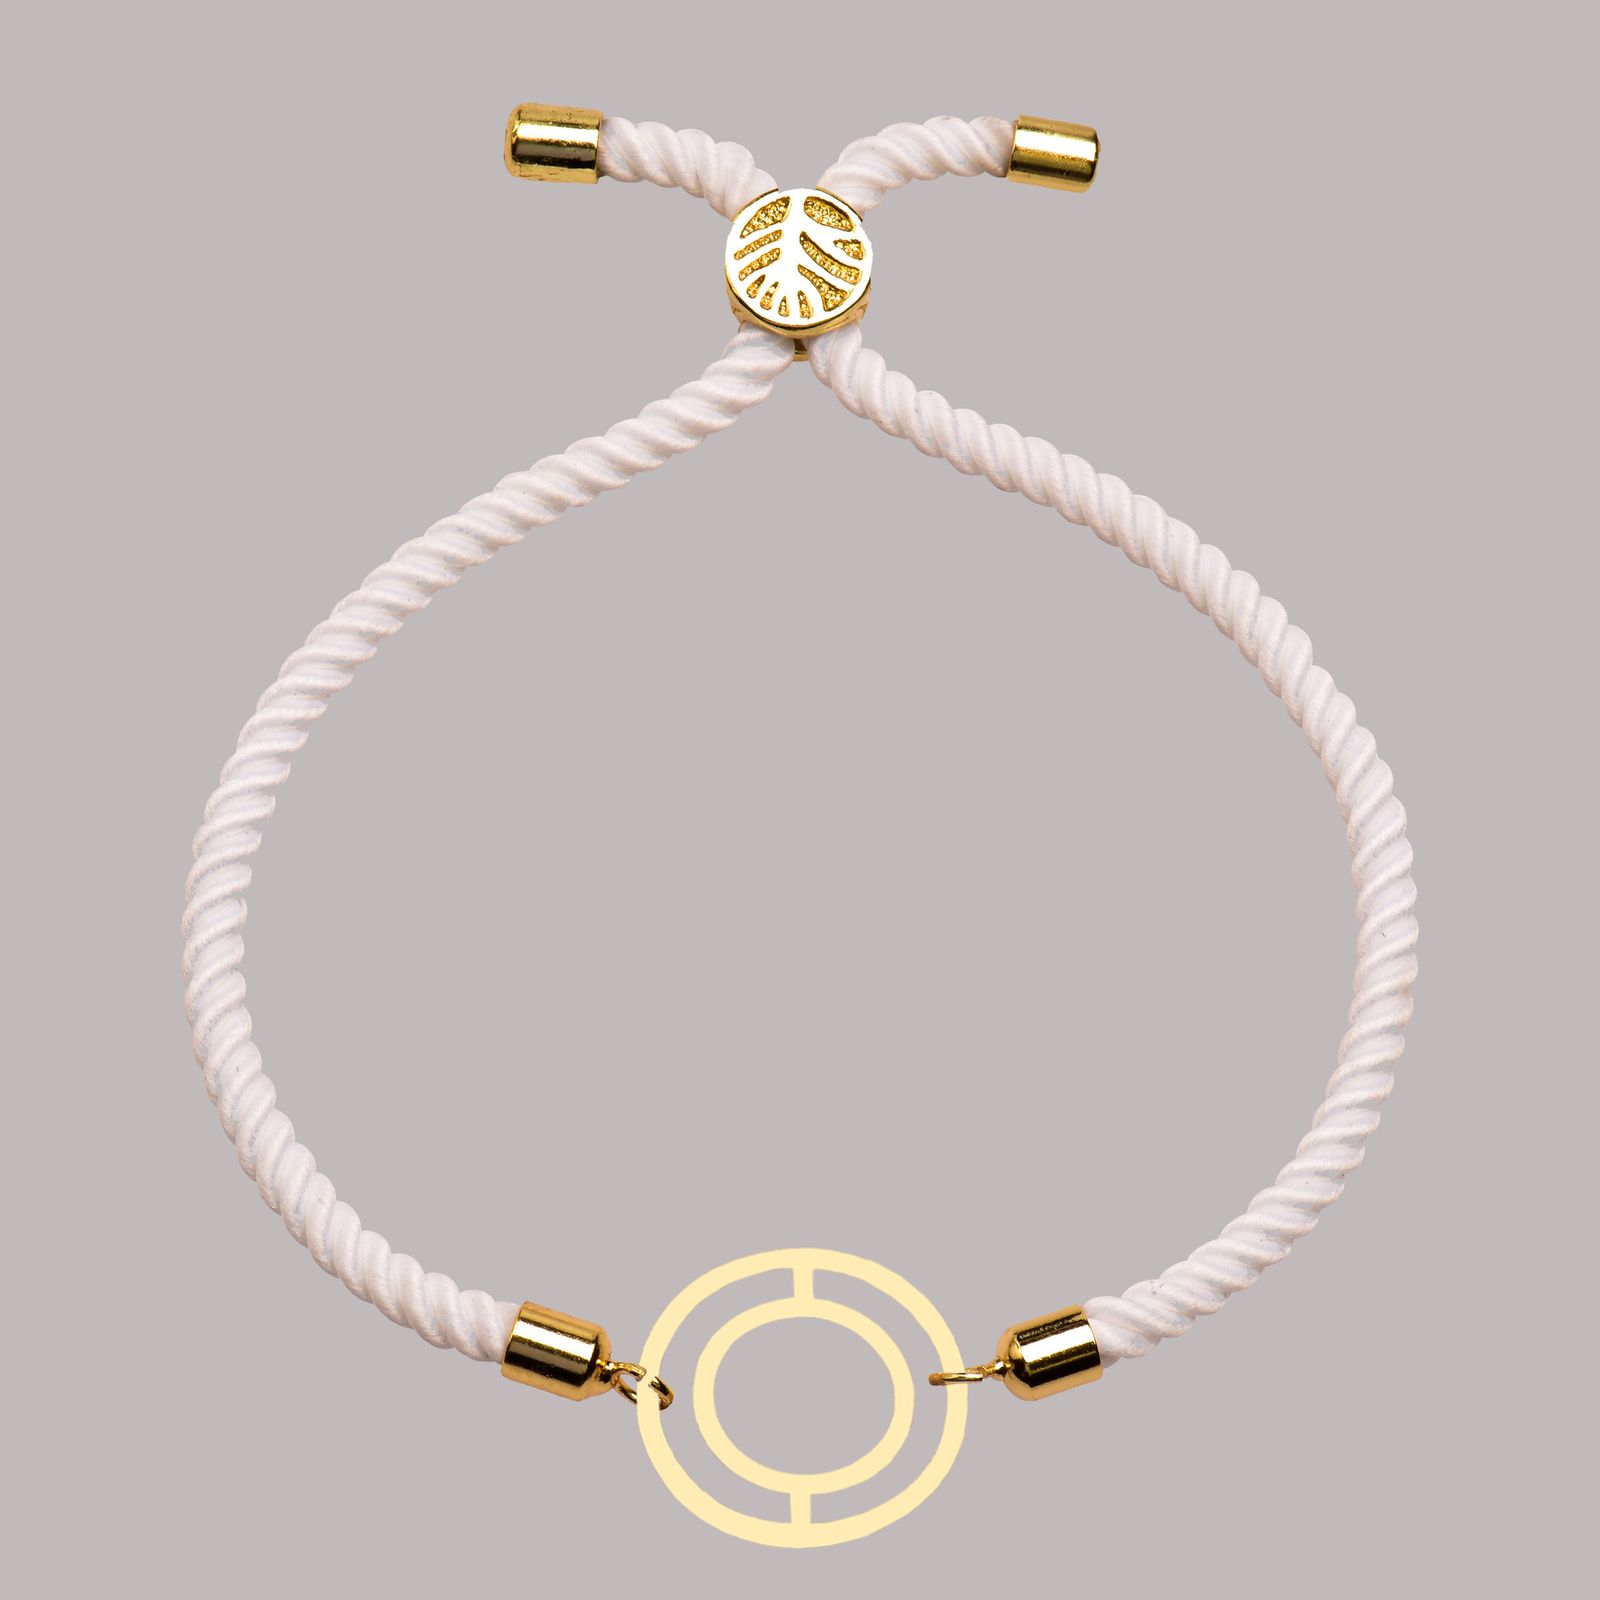 دستبند طلا 18 عیار زنانه کرابو طرح دایره مدل Kr102232 -  - 2